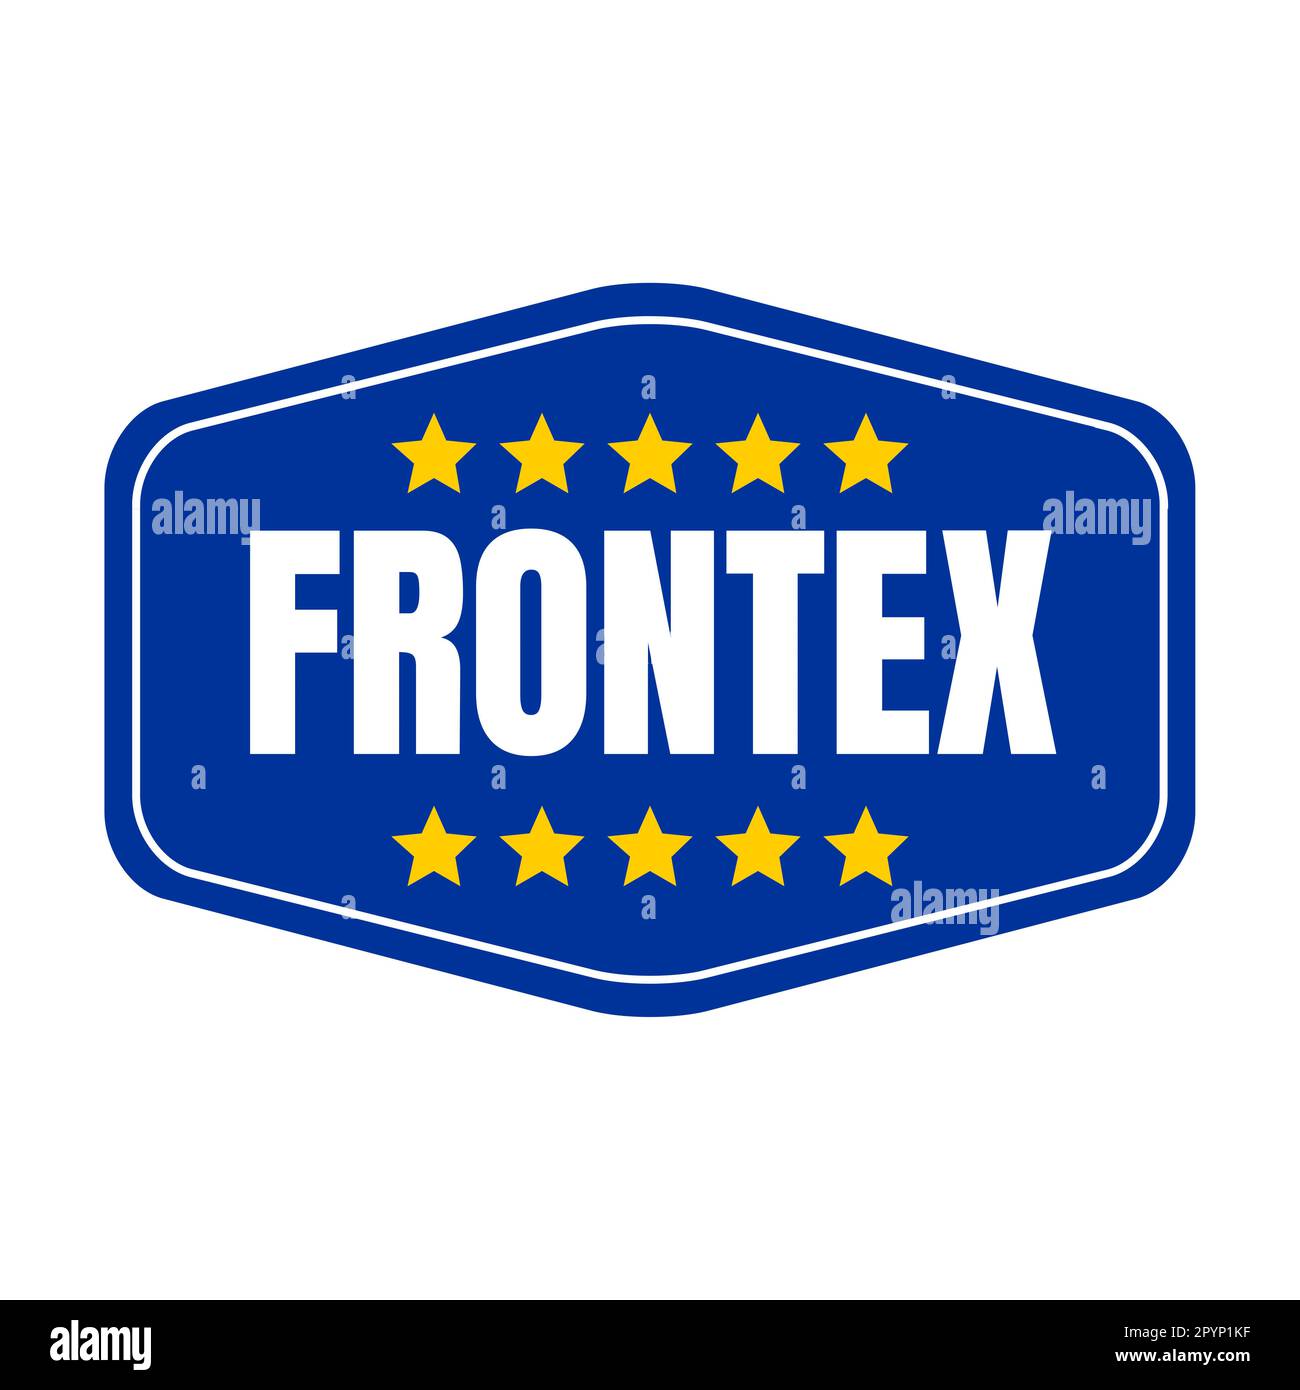 Frontex symbol icon illustration with European flag Stock Photo